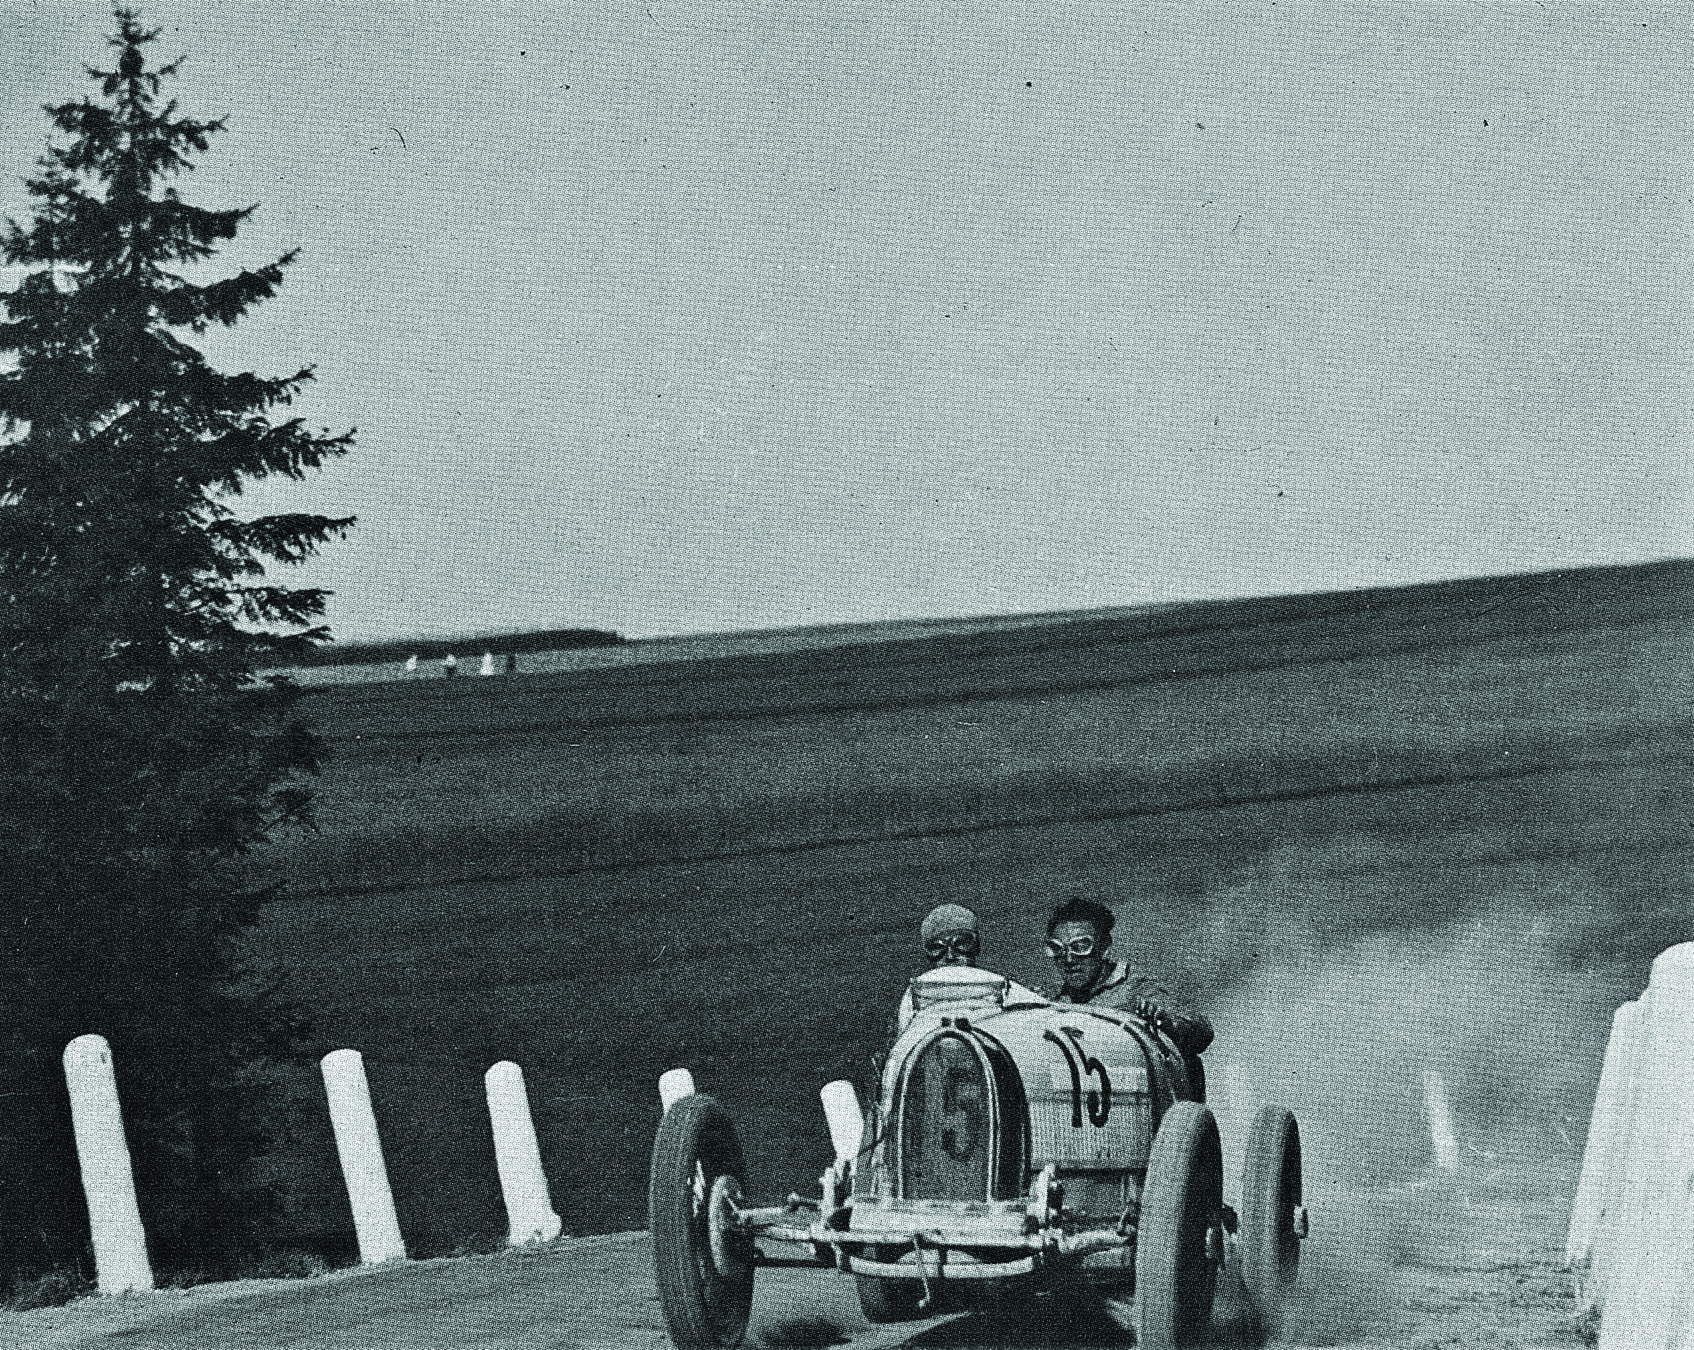 Jan Ripper (po lewej) w Bugatti na trasie wyścigu górskiego w Ojcowie w latach trzydziestych XX w. fot. NAC (Narodowe Archiwum Cyfrowe)